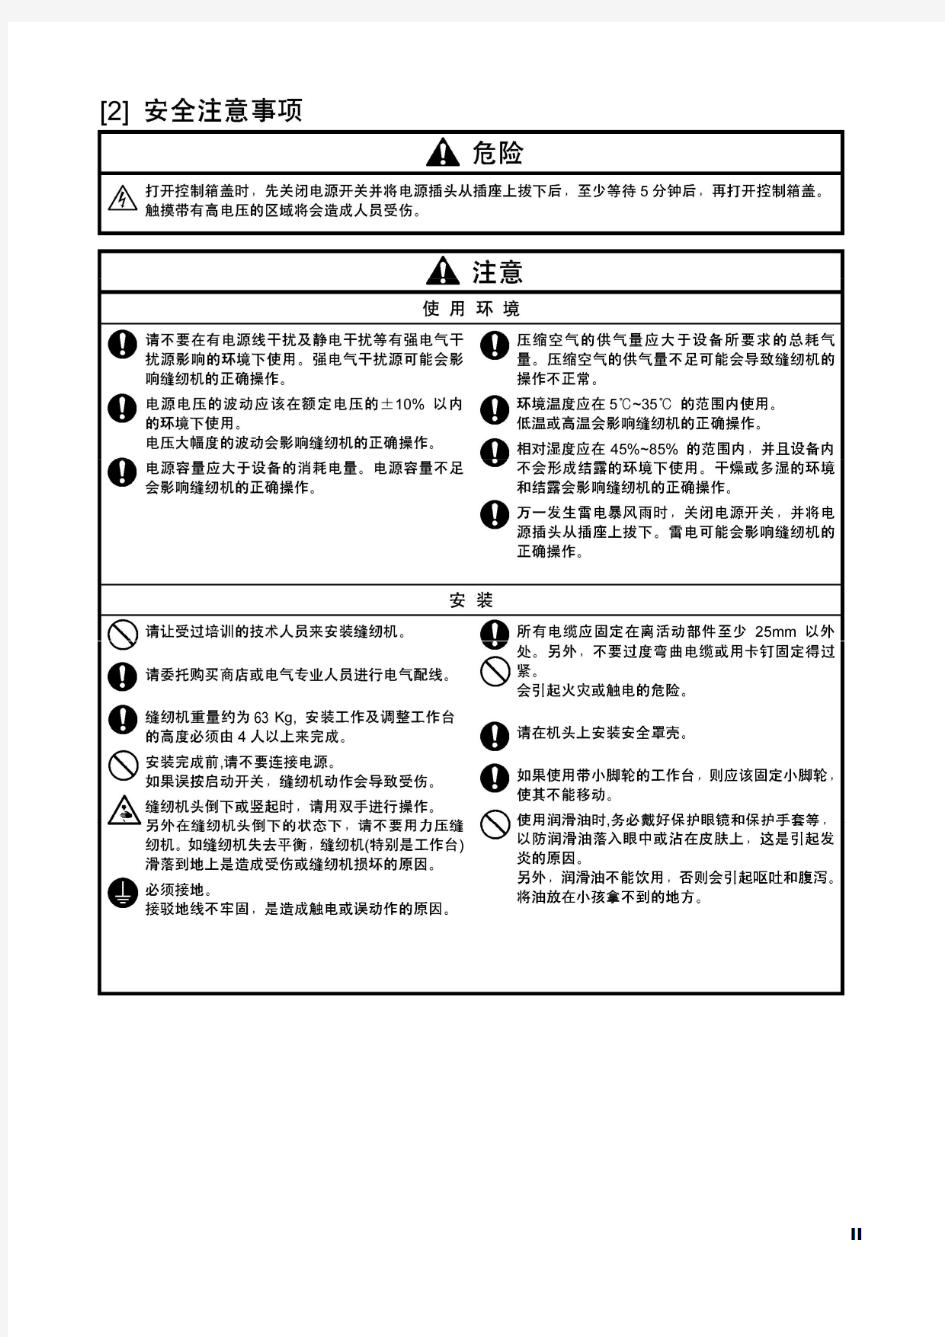 CSM-1790电子平头锁眼机说明书注意事项(中文版)